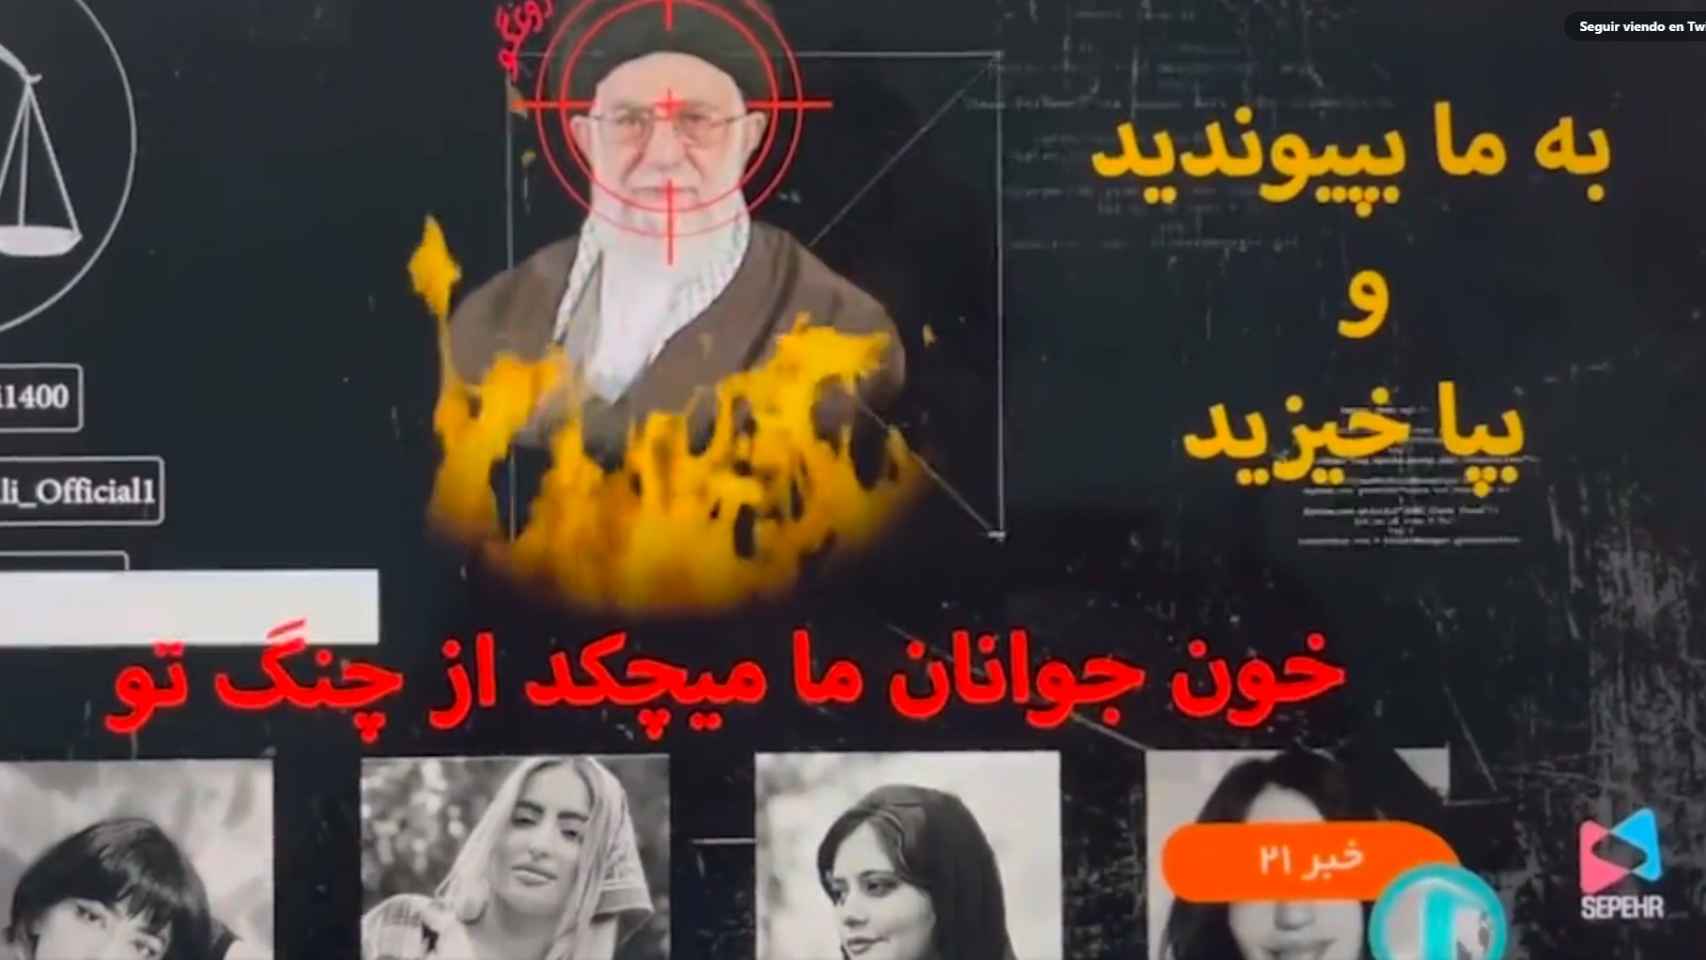 Captura de la imagen proporcionada por la televisión estatal de Irán.